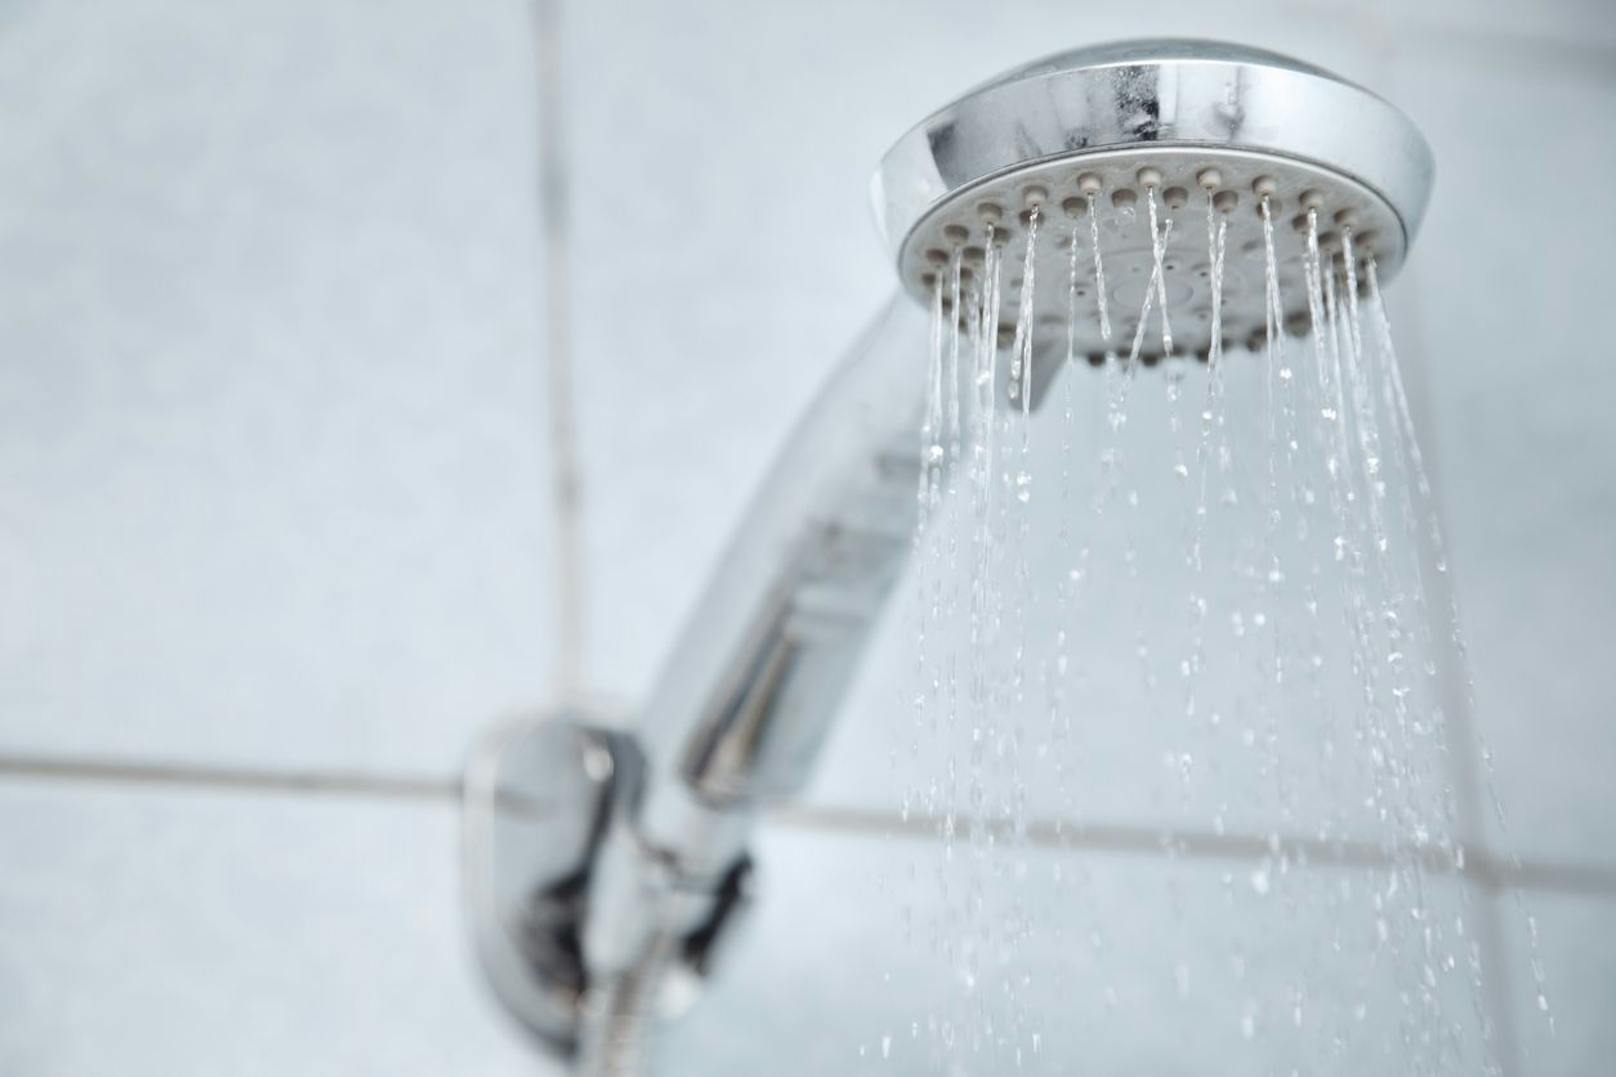 Jeder Tropfen tut weh - Für Wasserallergiker ist eine Dusche alles andere als erholsam.